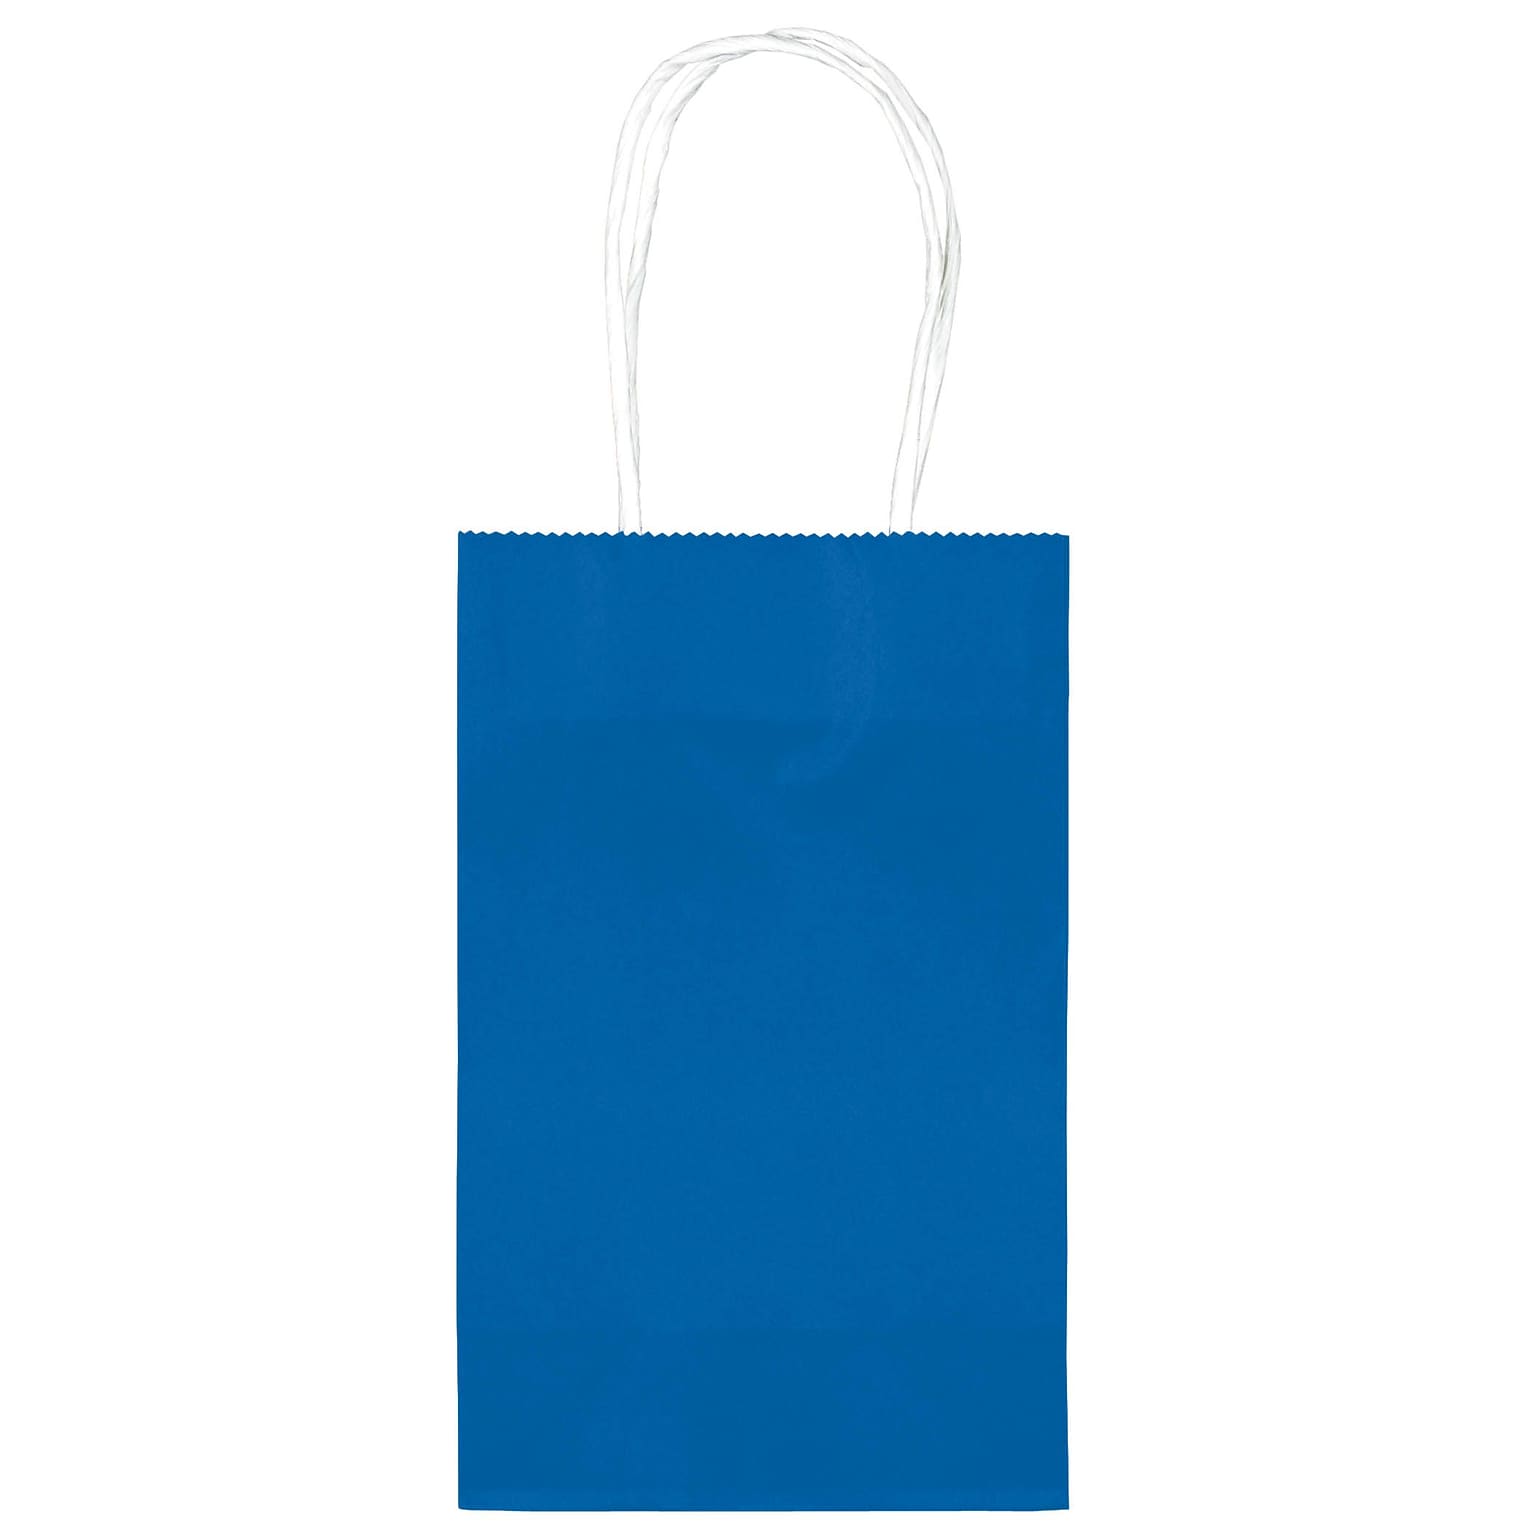 Amscan Kraft Paper Bag, 8.25 x 5.25, Bright Royal Blue, 4/Pack, 10 Bags/Pack (162500.105)